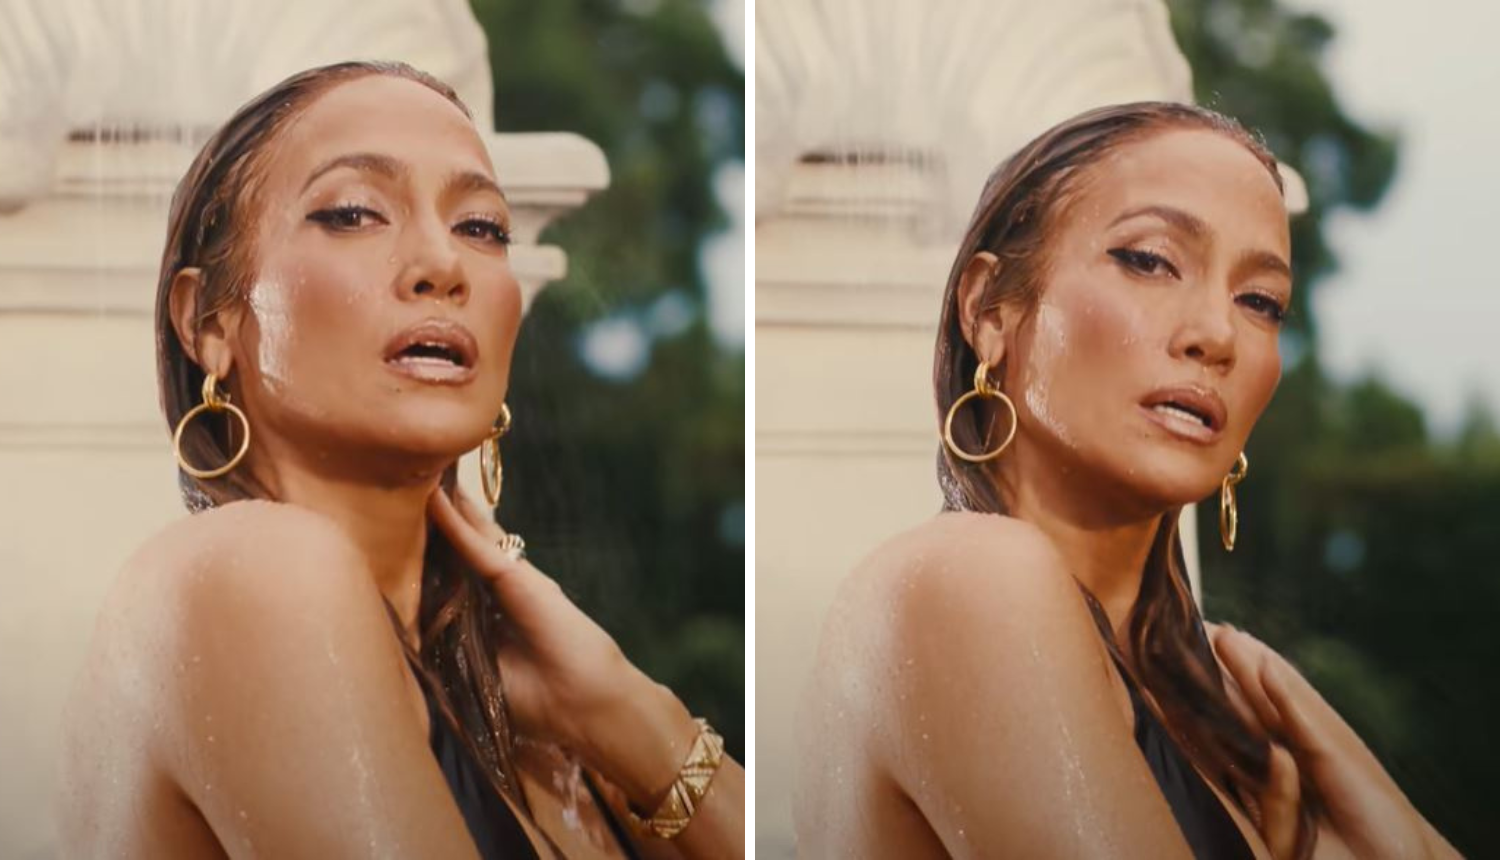 Novi spot Jennifer Lopez prepun je vrućih scena, obožavatelji su oduševljeni: 'Kakva legenda!'